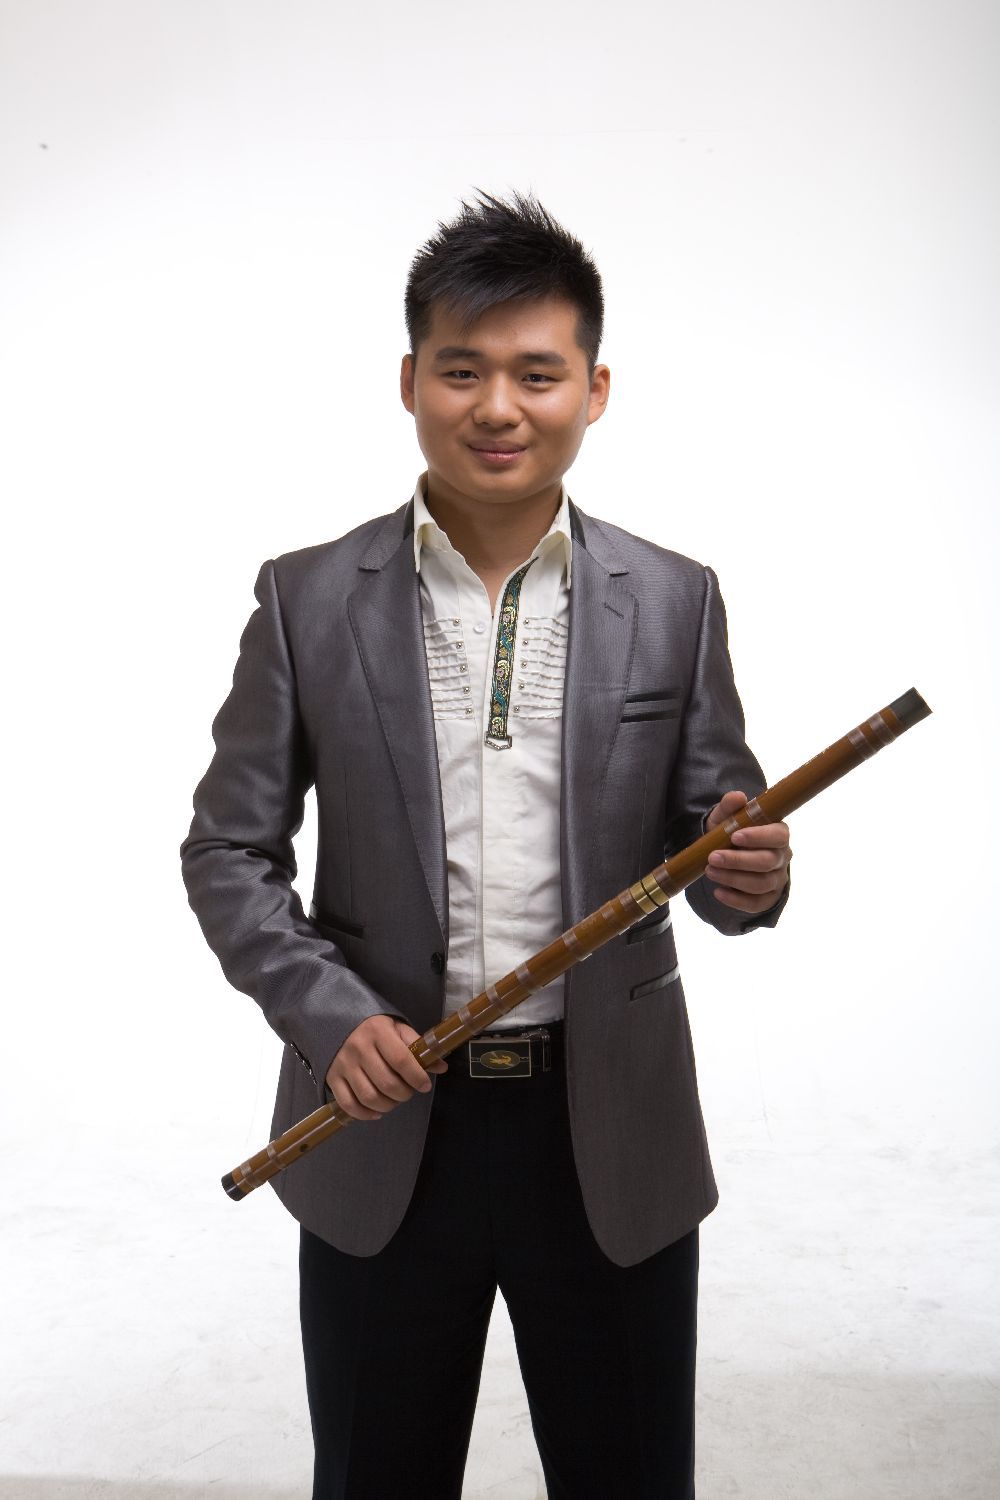 王溪(演员|教师)王溪,中国著名青年笛箫演奏家,中央